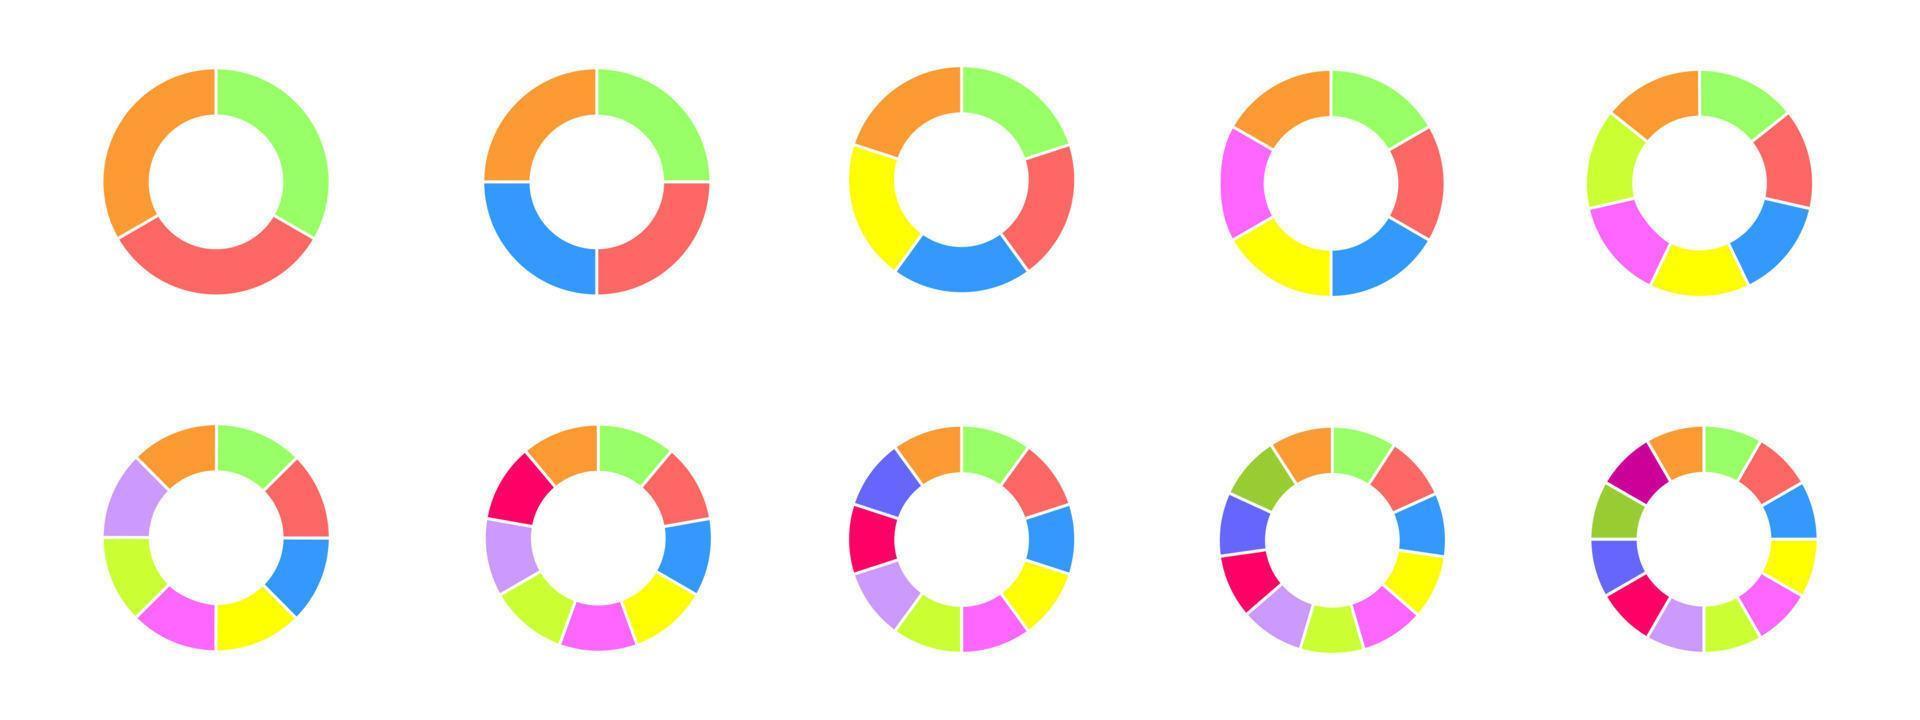 munk diagram uppsättning. färgrik cirkel diagram dividerat i sektioner form 3 till 12. infographic hjul ikoner. runda former skära i likvärdig delar vektor